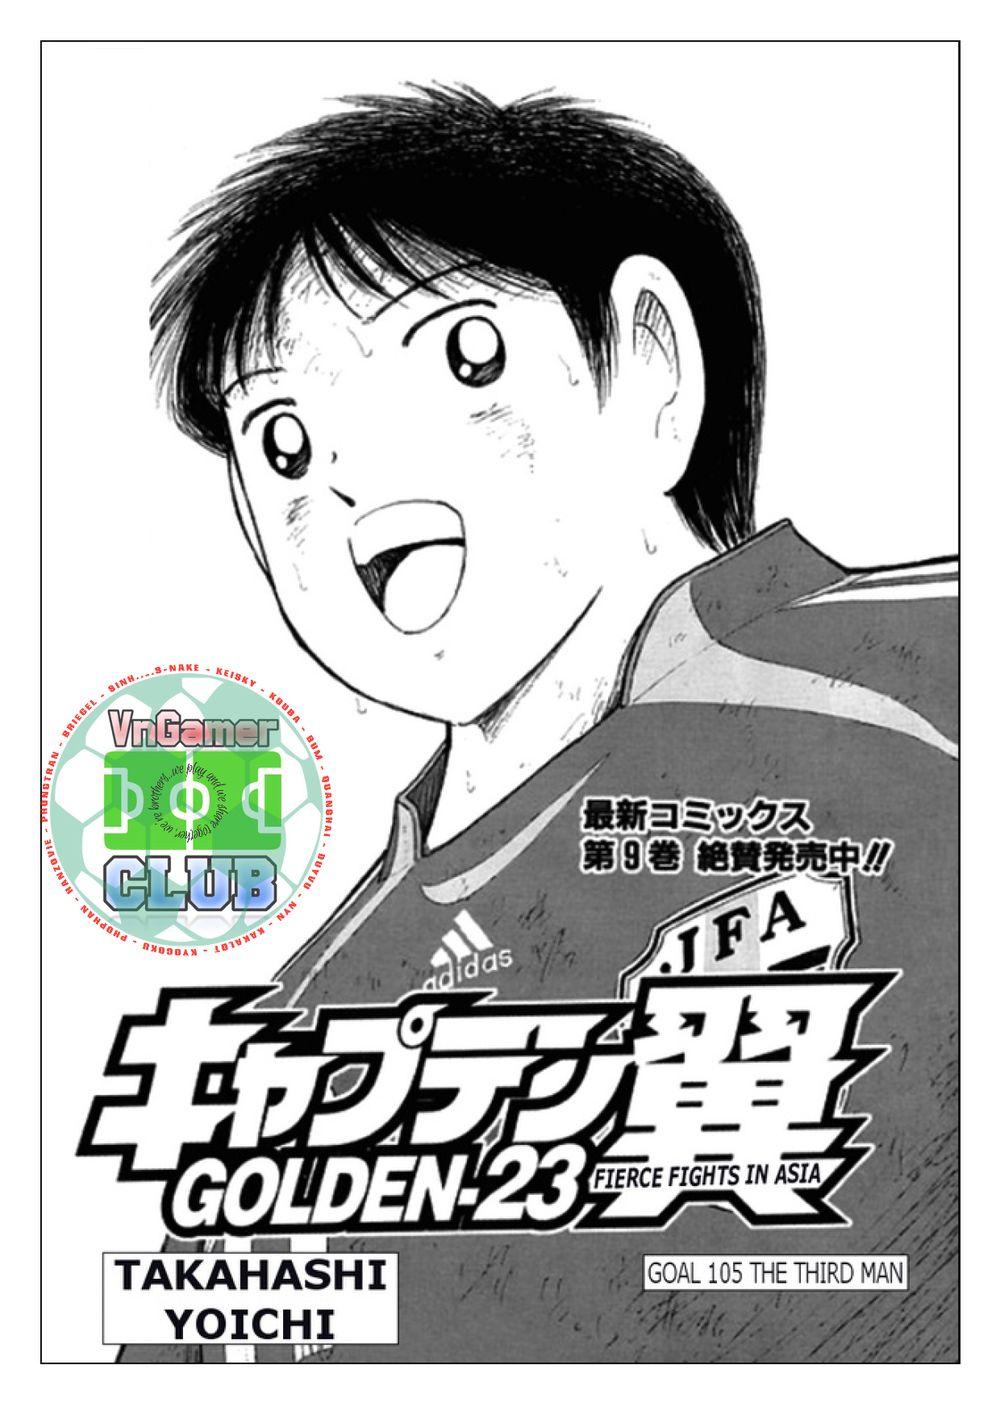 Captain Tsubasa: Golden 23 - Trang 1